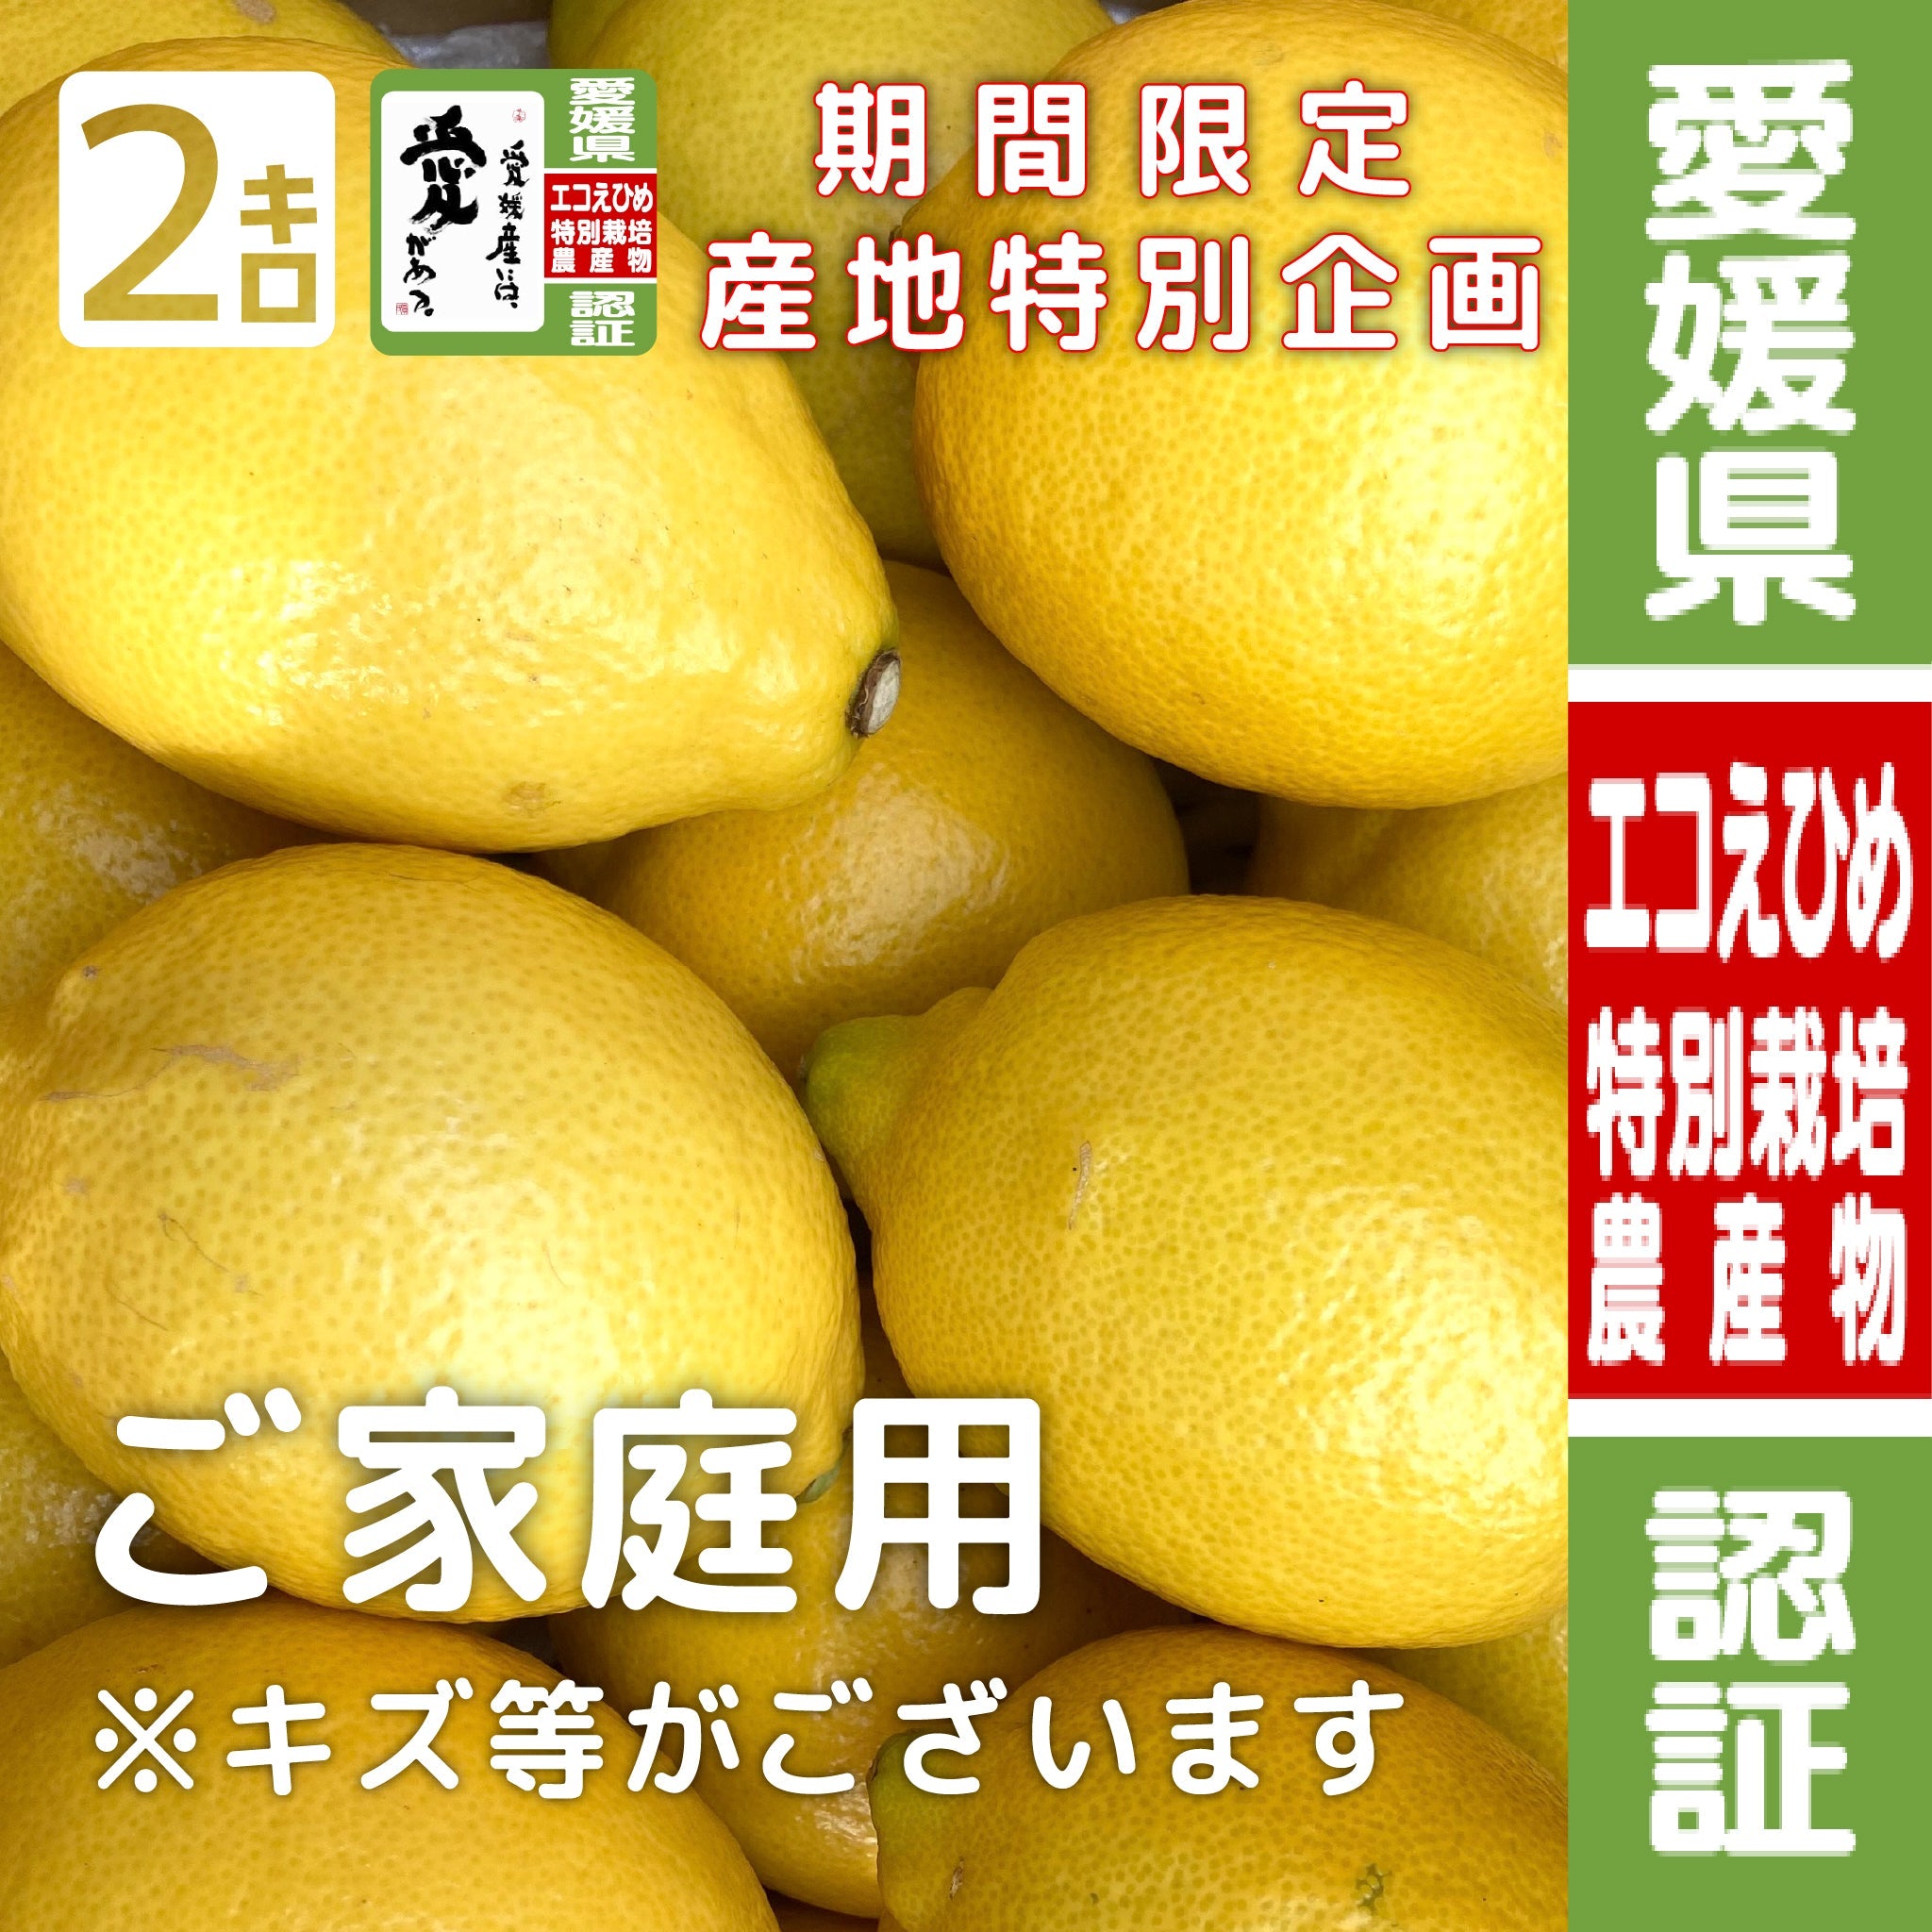 愛媛県産エコレモン家庭用20キロ国産レモン